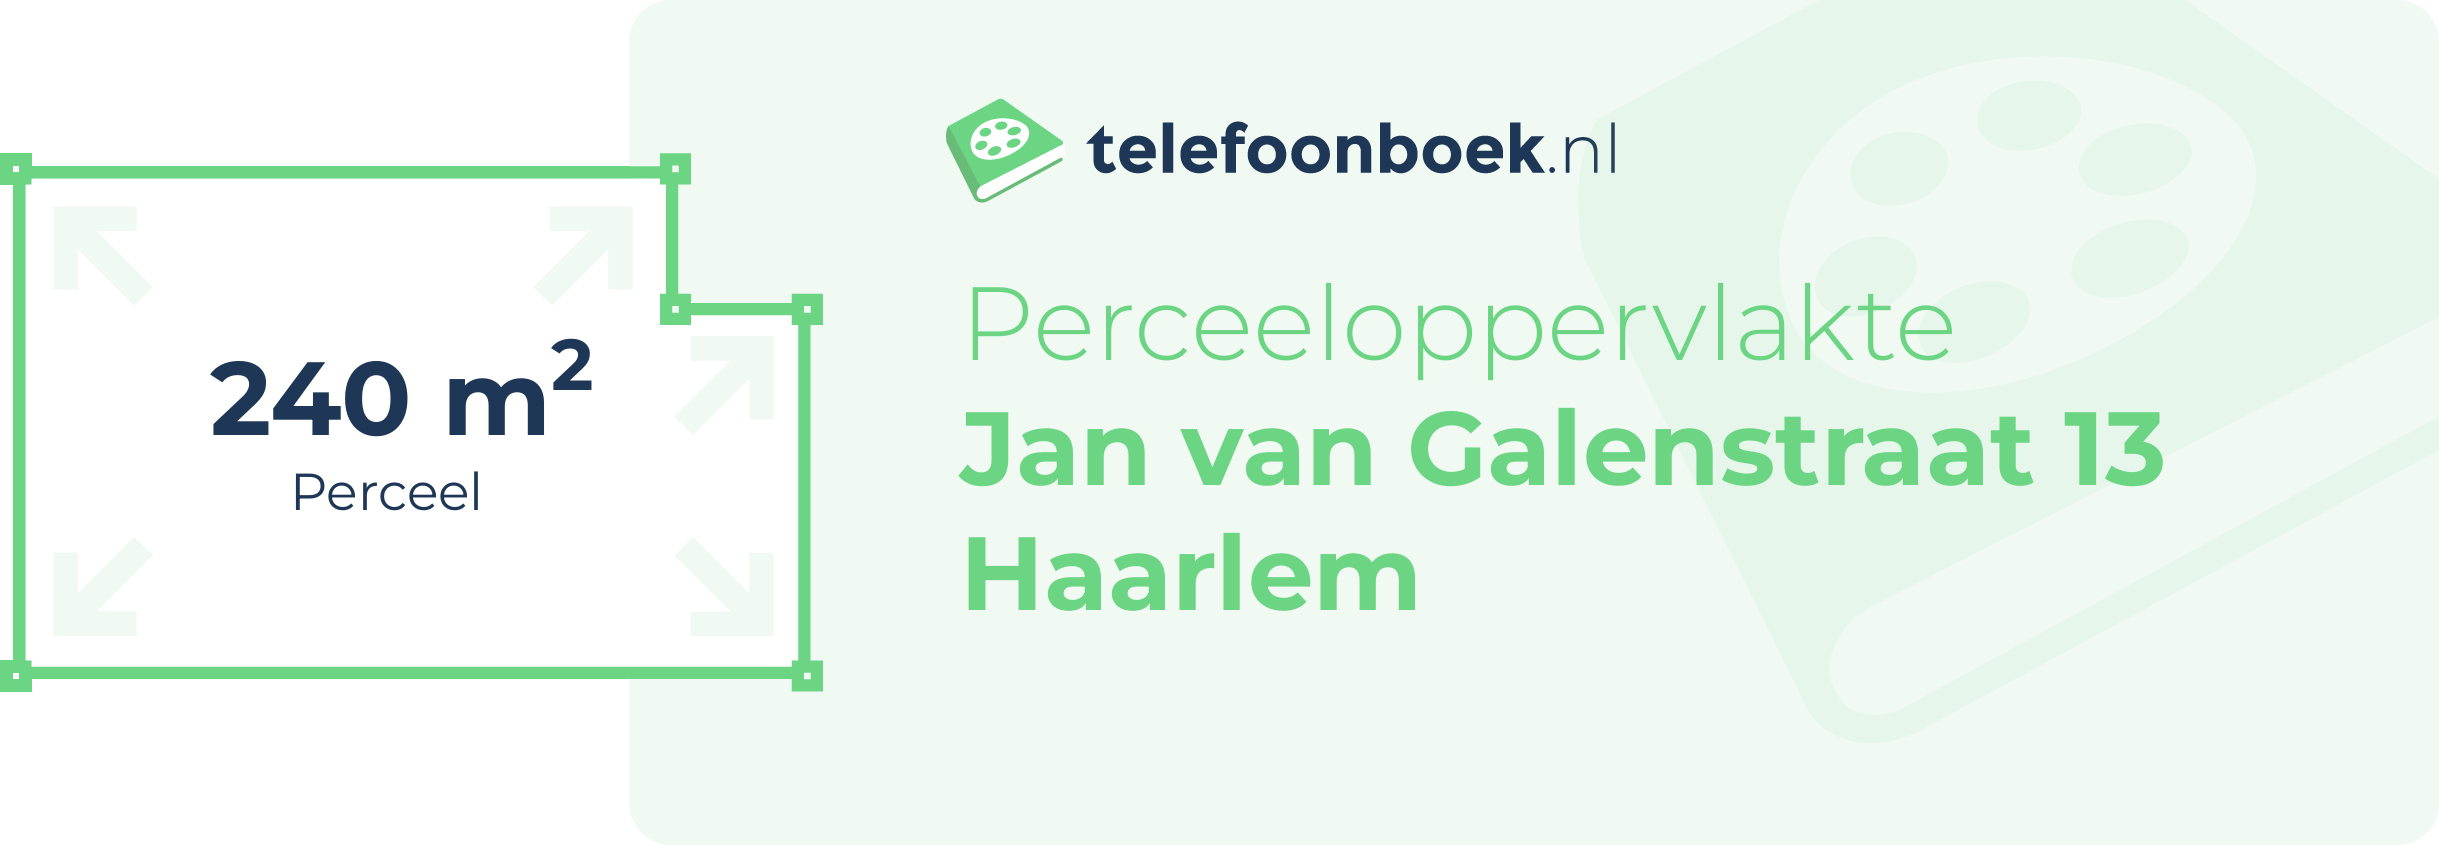 Perceeloppervlakte Jan Van Galenstraat 13 Haarlem